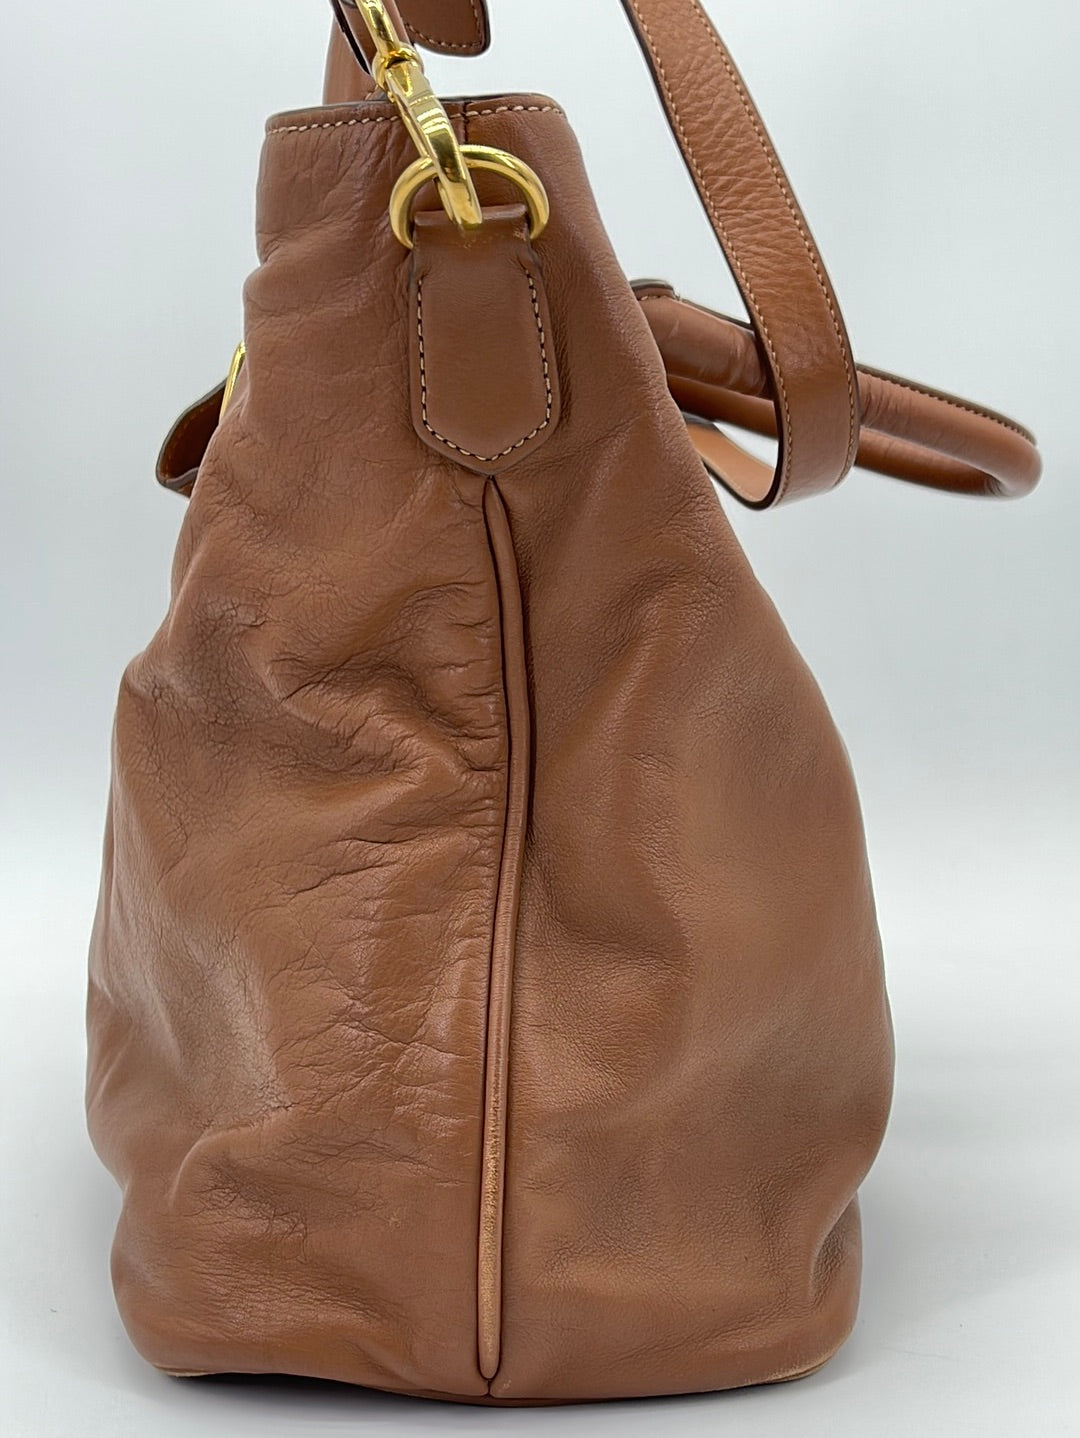 An vitello daino leather Prada bag. - Bukowskis